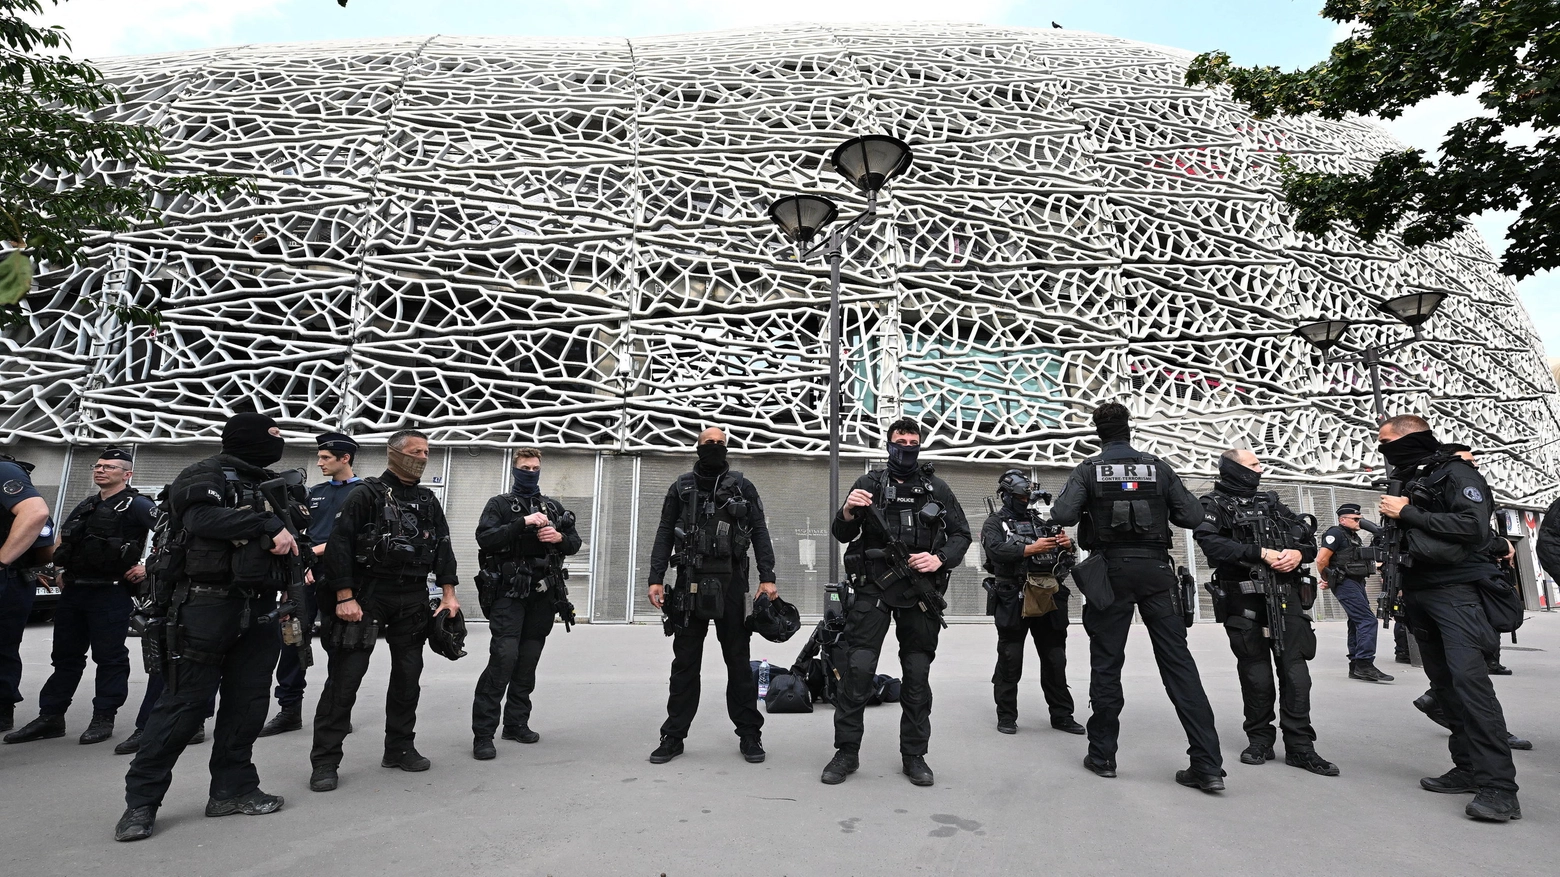 Gli 88 atleti israeliani ai Giochi di Parigi sono protetti 24 ore su 24 dai servizi di sicurezza francesi e sono sorvegliati anche da funzionari dello Shin Bet, in seguito a una serie di minacce alla delegazione e ai lavori.